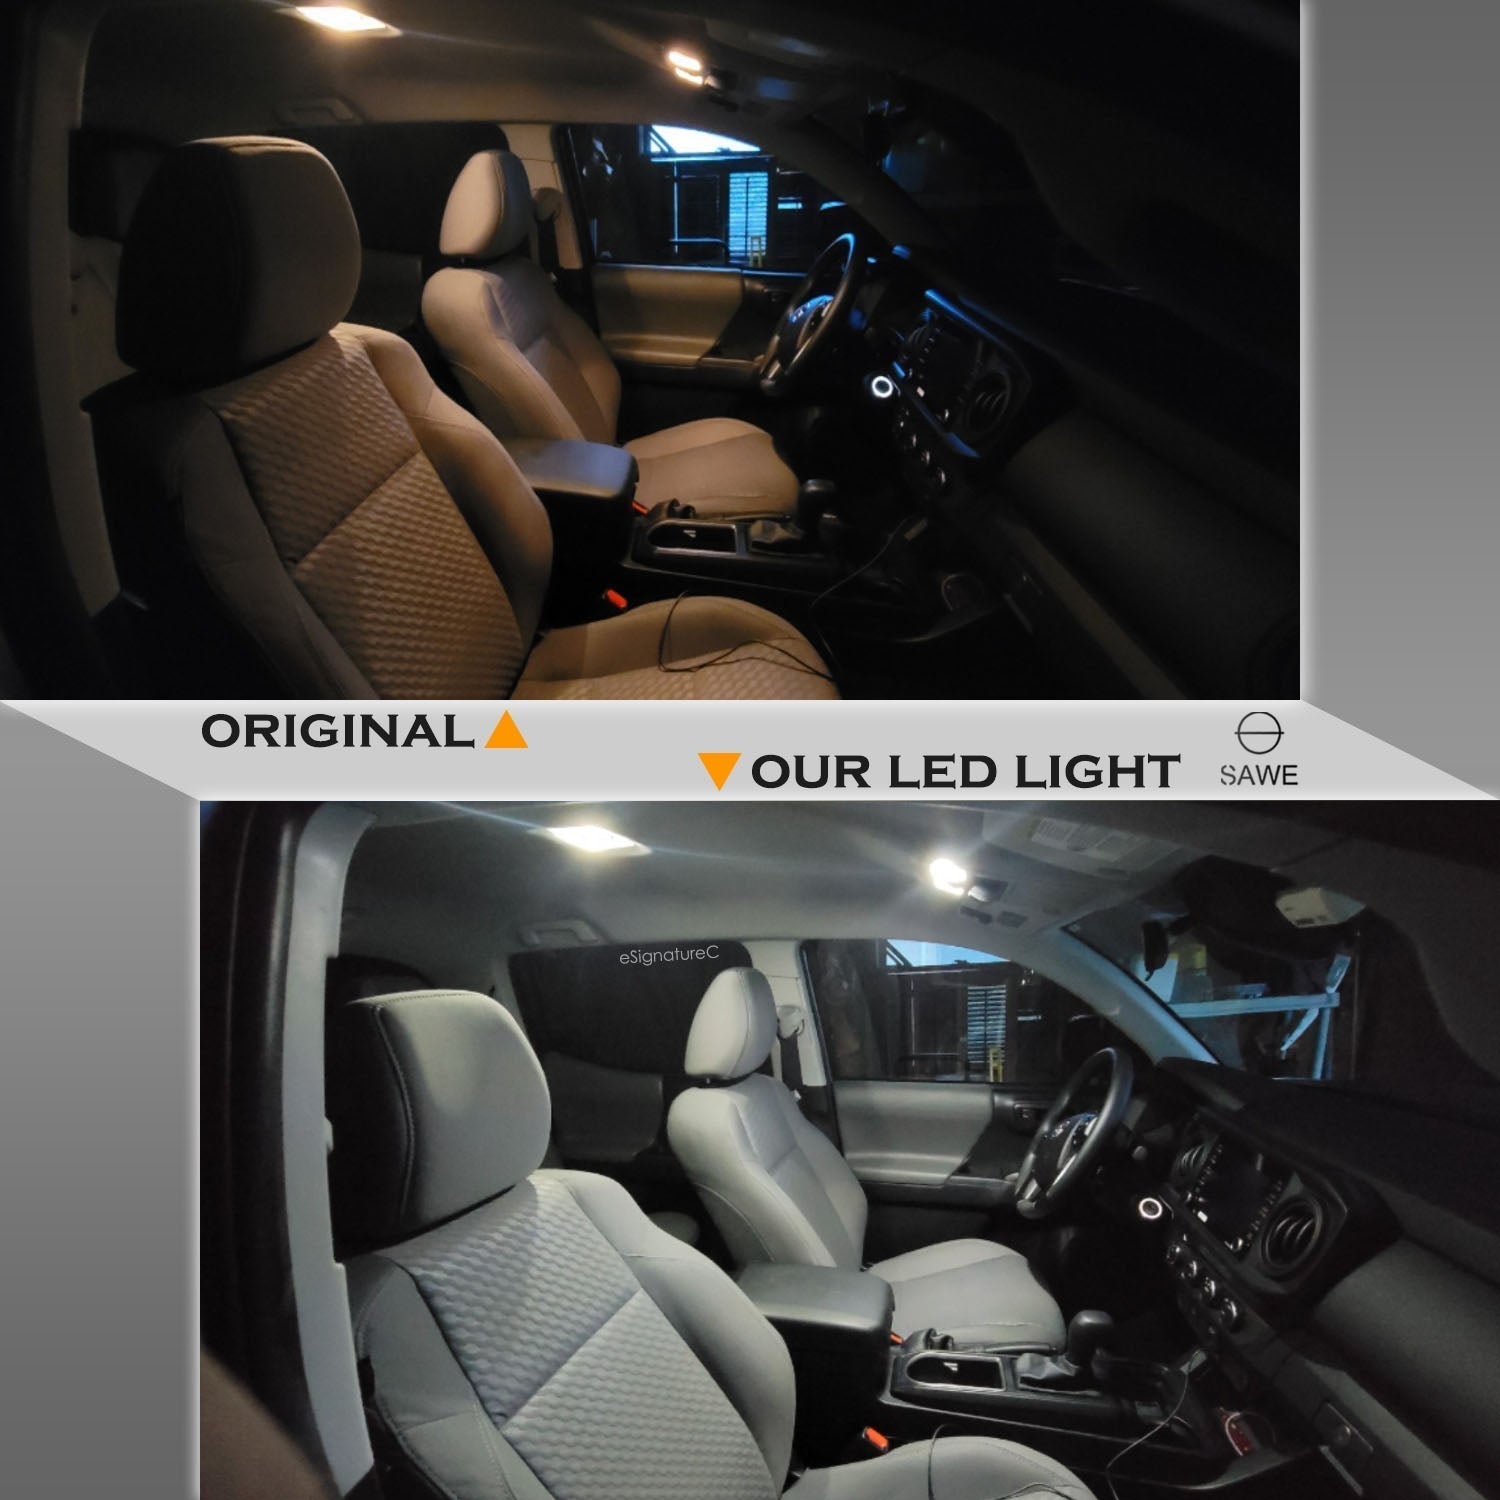 For Honda Pilot Interior LED Lights - Dome & Map Lights Package Kit for 2006 - 2008 - White